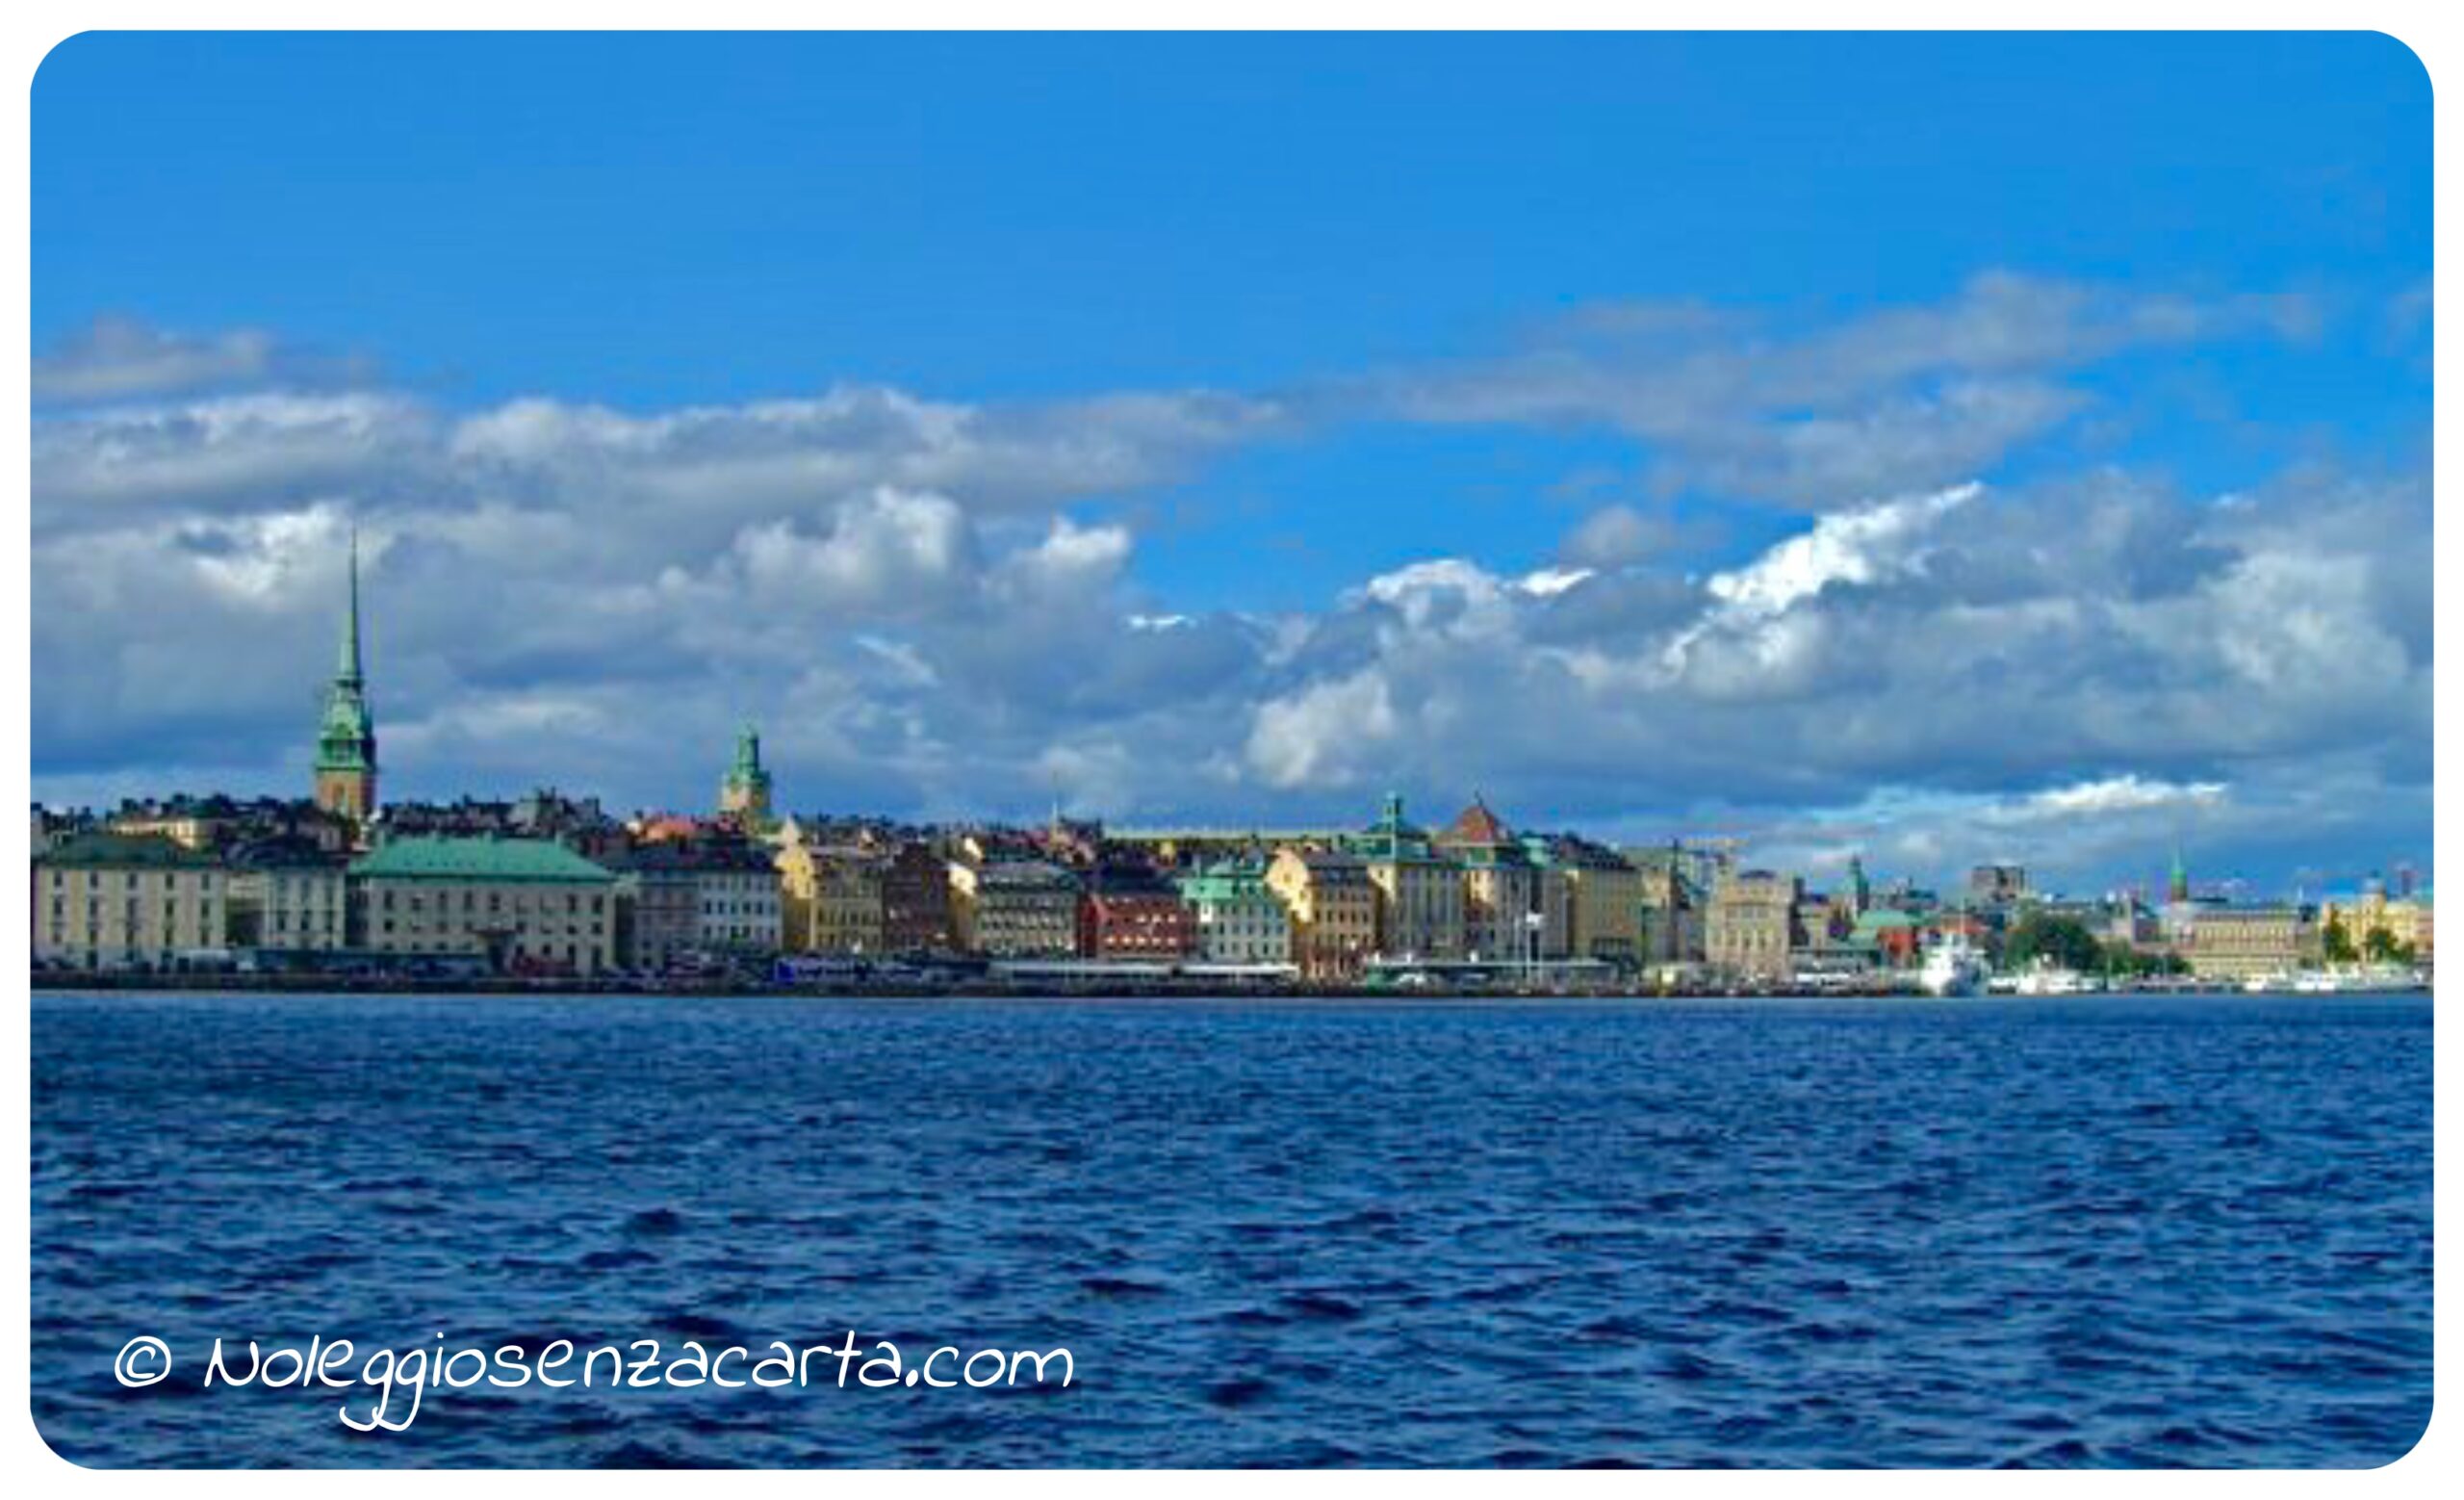 Noleggiare auto senza carta di credito a Stoccolma – Svezia